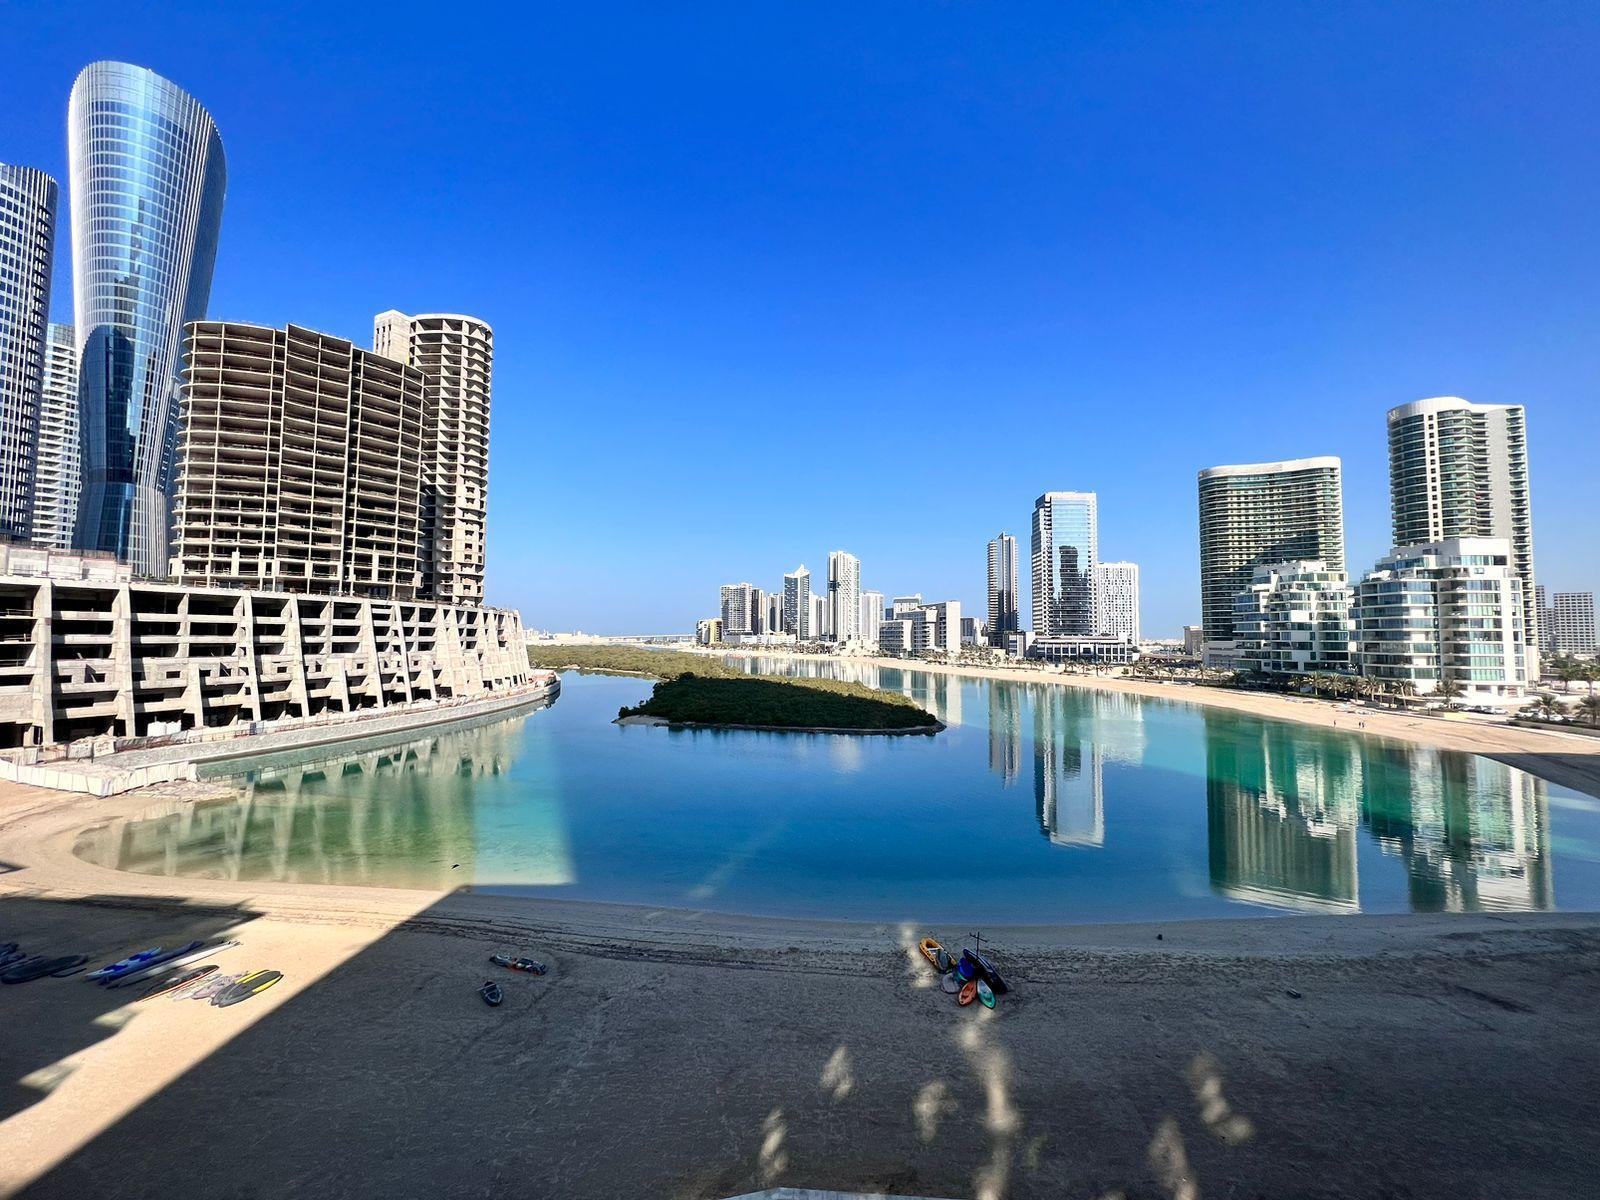 4 bed, 6 bath Hotel & Hotel Apartment for sale in One Reem Island, Shams Abu Dhabi, Al Reem Island, Abu Dhabi for price AED 9537000 